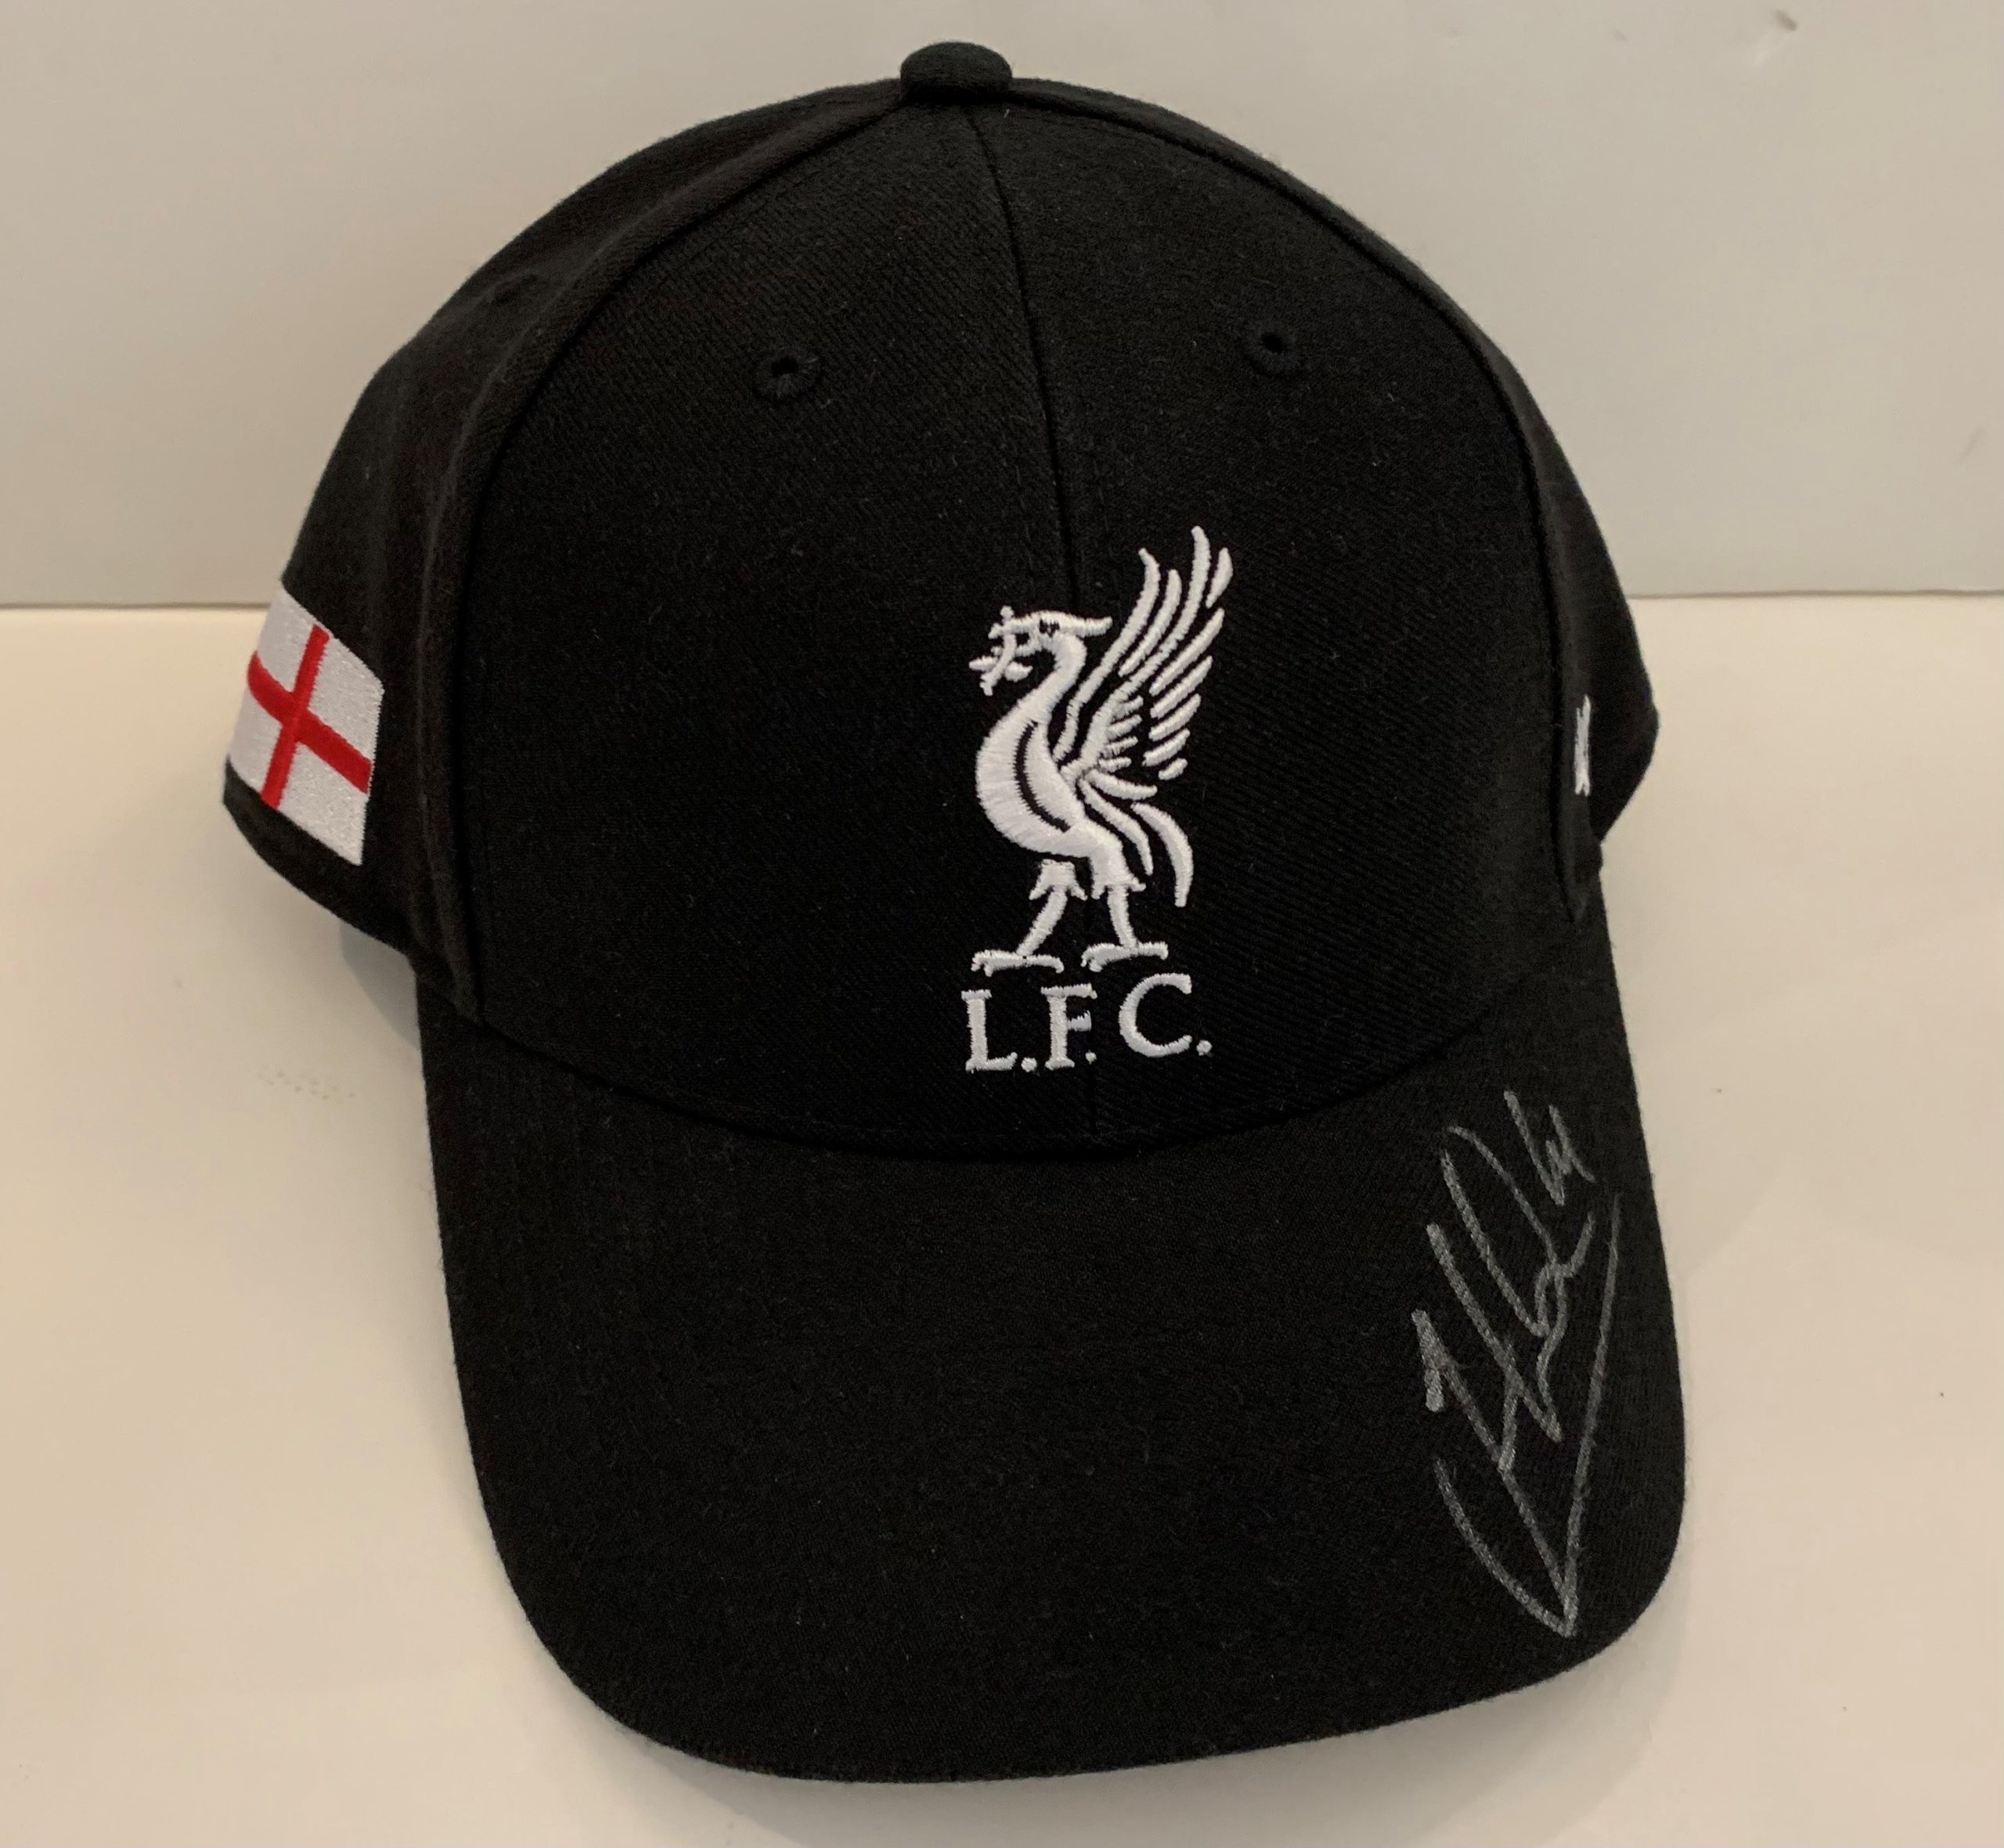 Jordan Henderson Signed Liverpool FC Cap - The Autograph Source